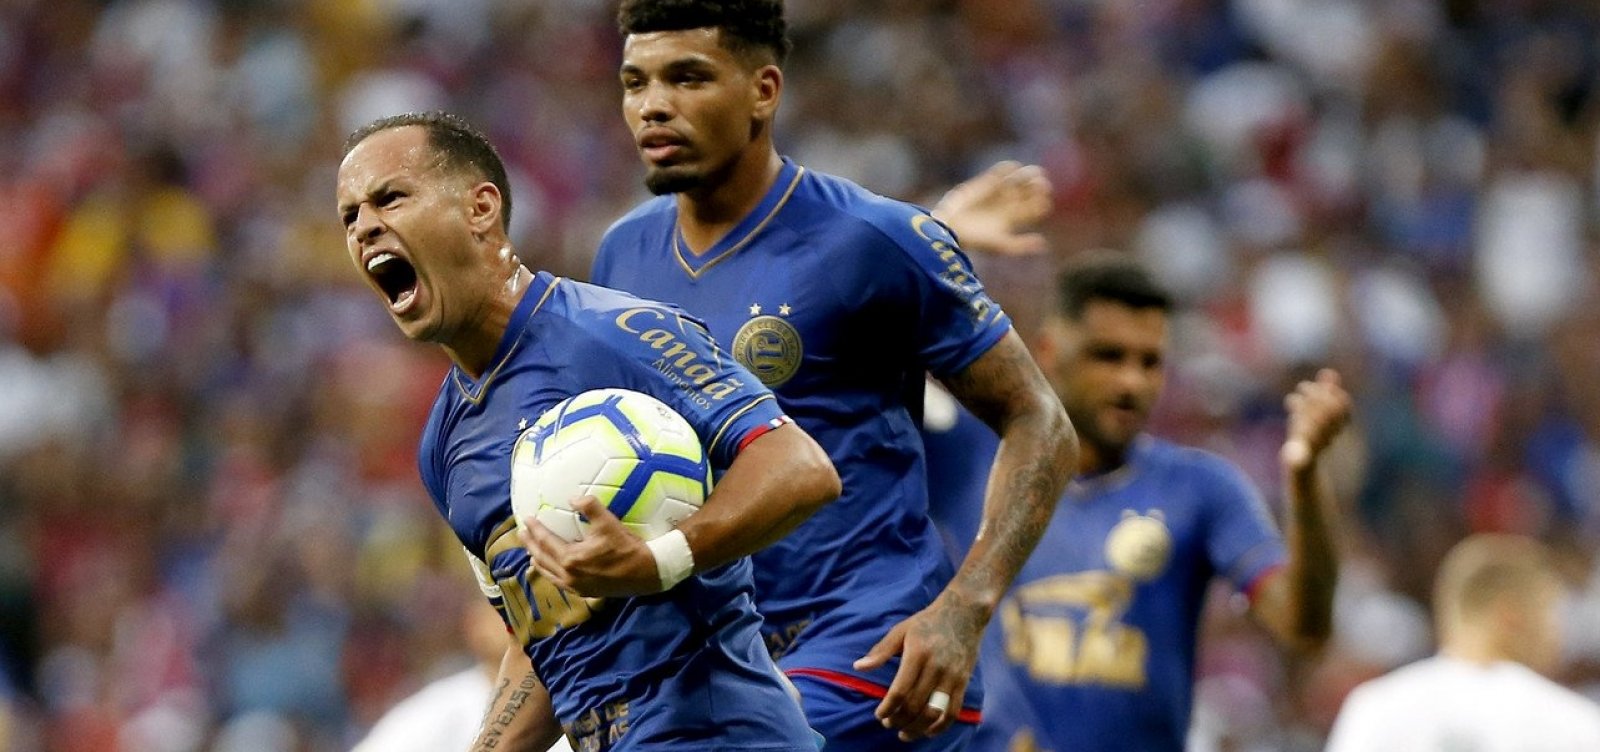 Guerra comemora primeiro gol marcado com a camisa do Bahia